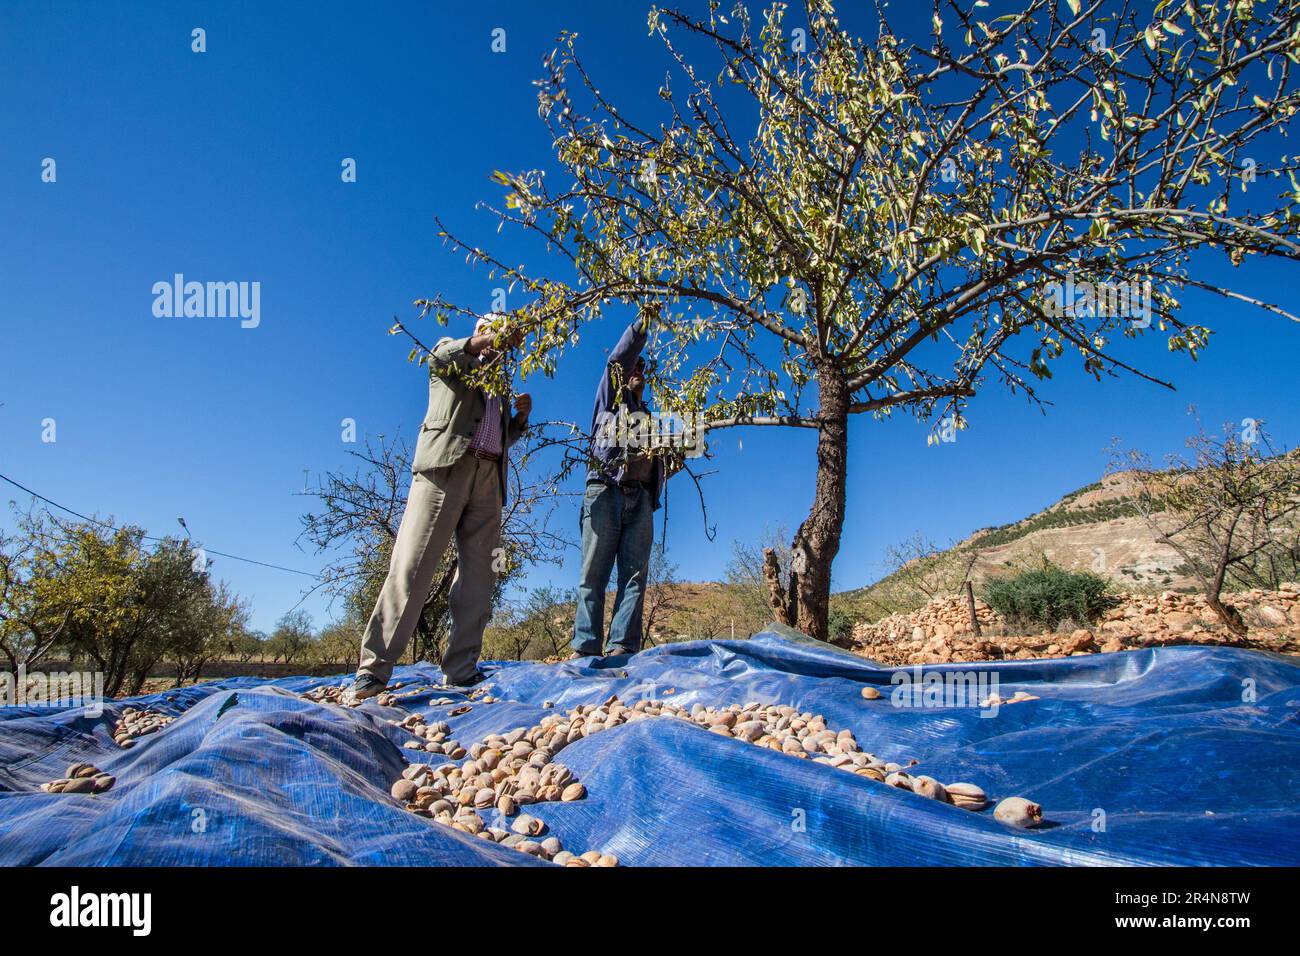 Los agricultores cosechan activamente almendras de un almendro Foto de stock